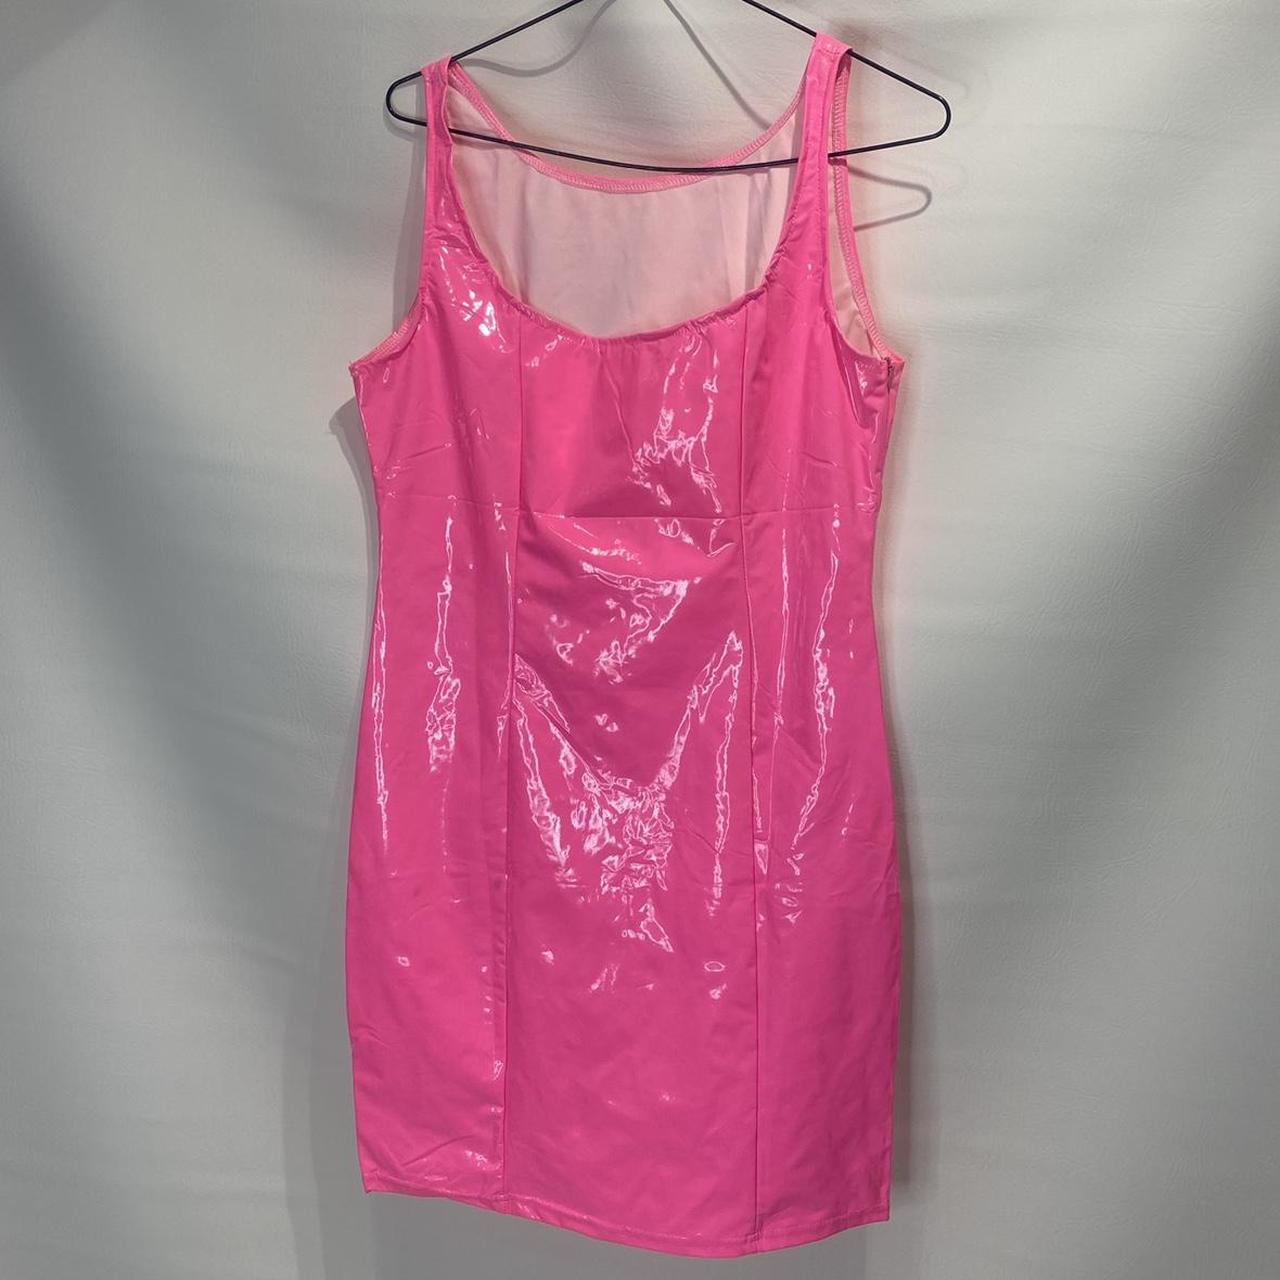 Pink PVC dress Small Never worn #pinkdress... - Depop